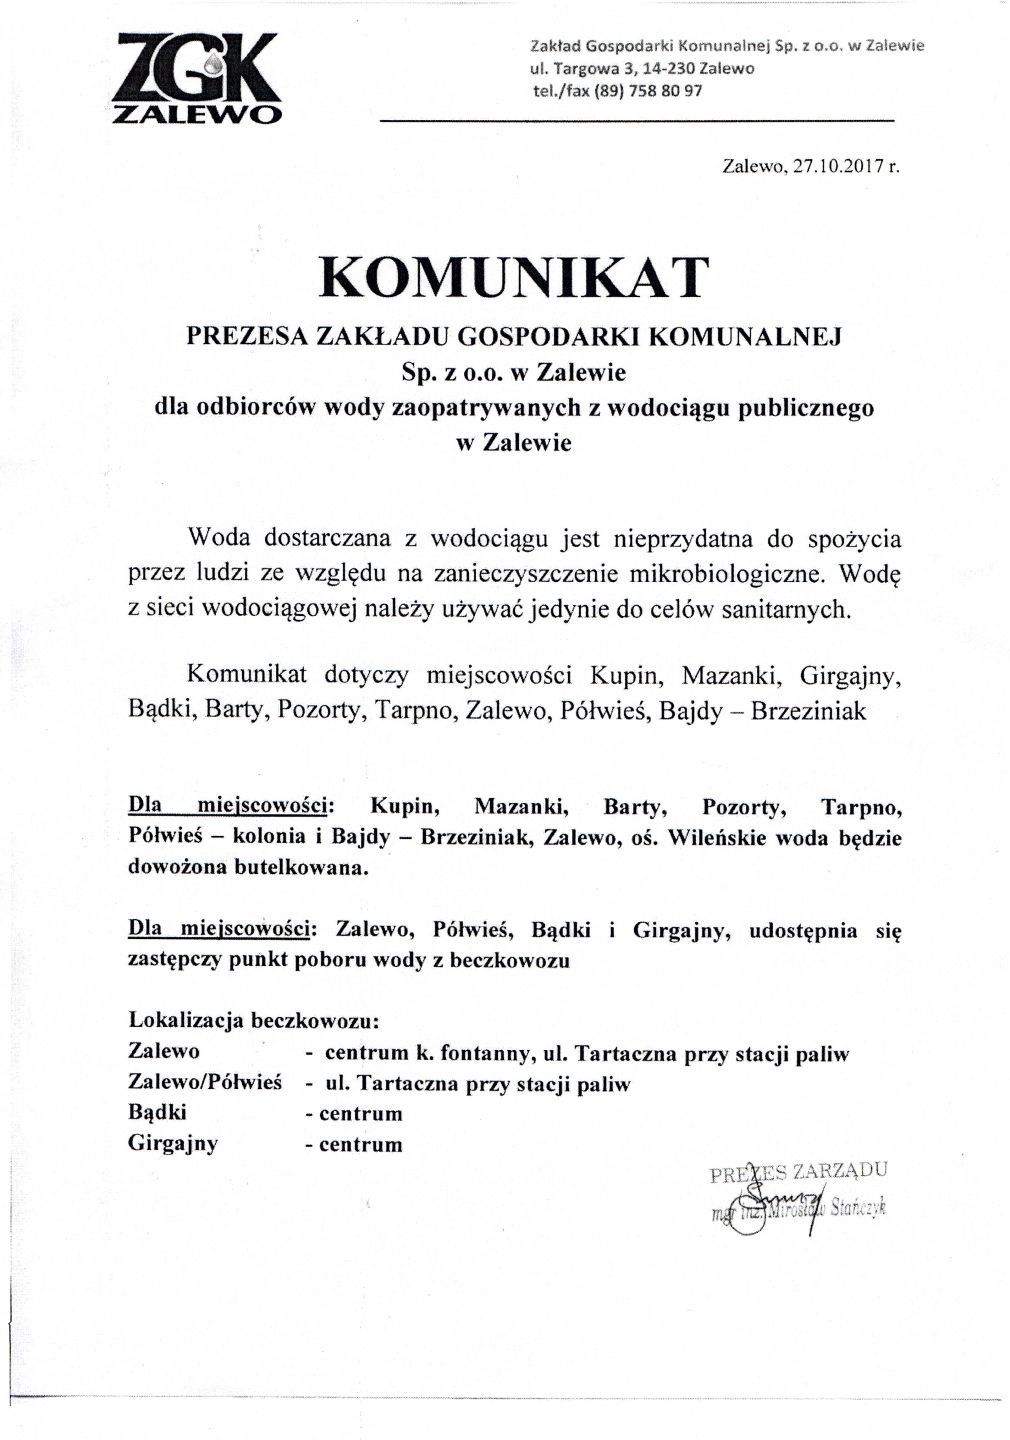 Komunikat Prezesa ZGK Sp. z o.o. w Zalewie